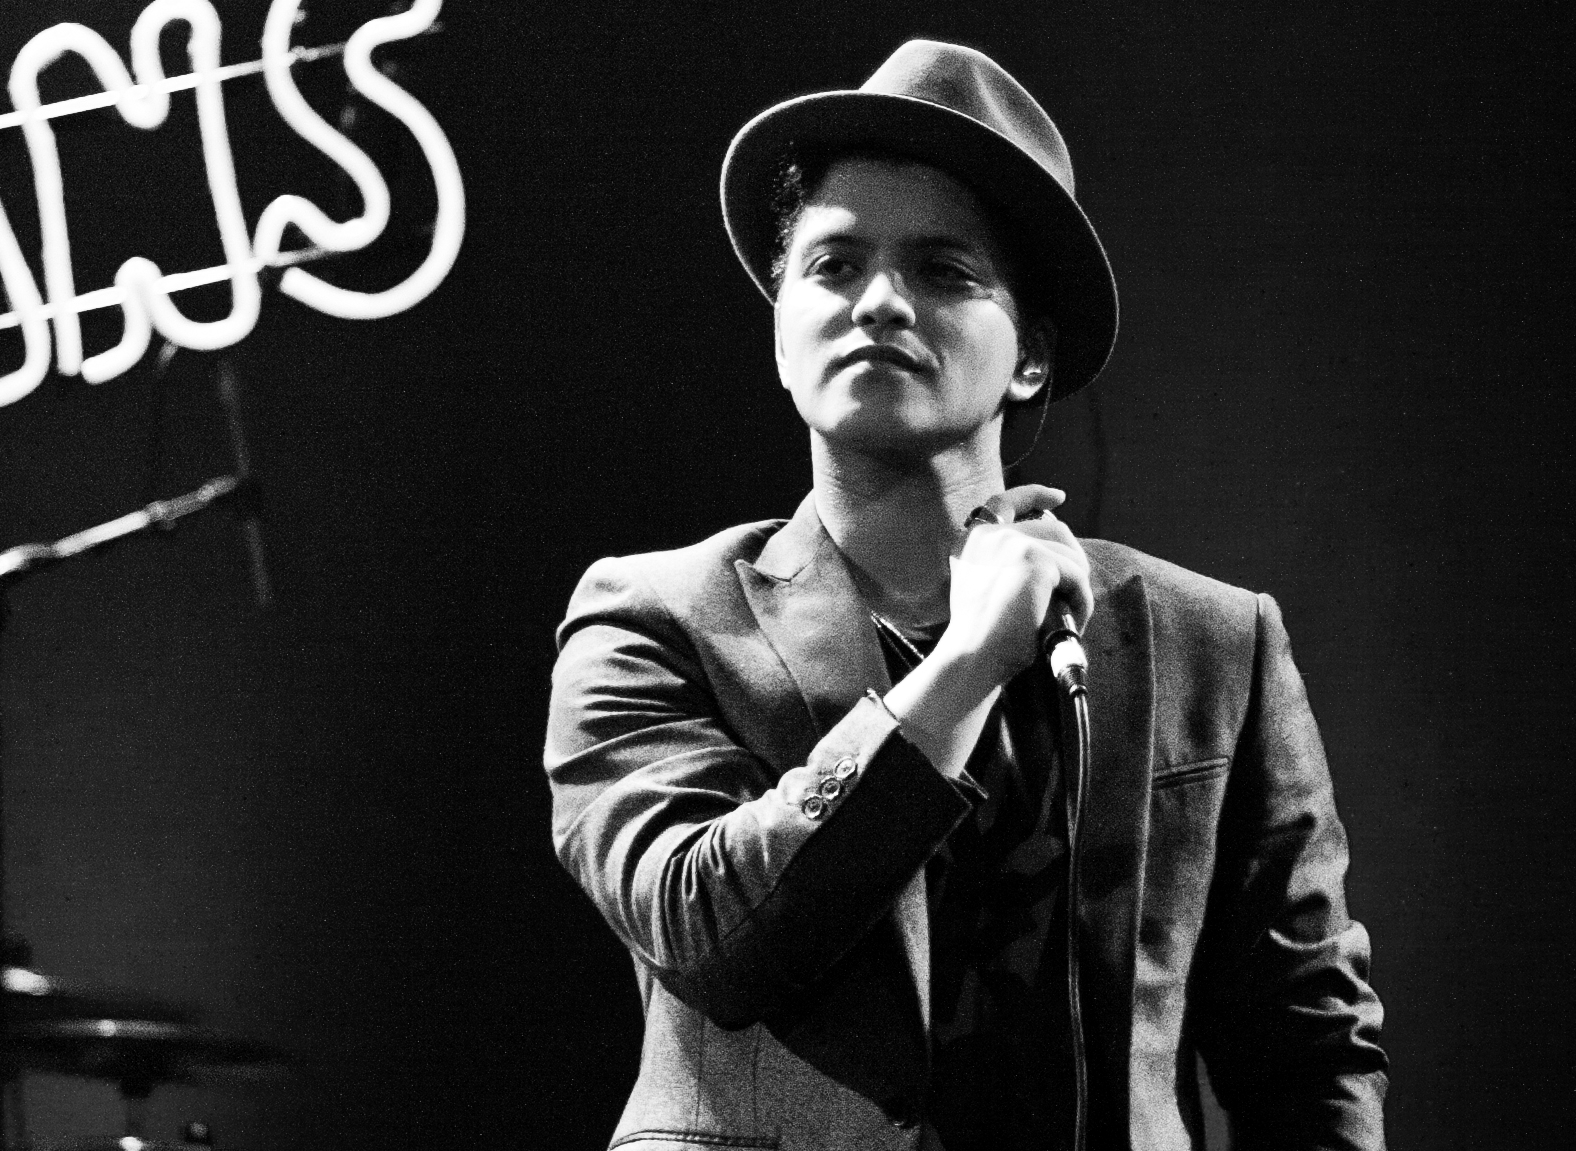 Bruno Mars announces new single, album